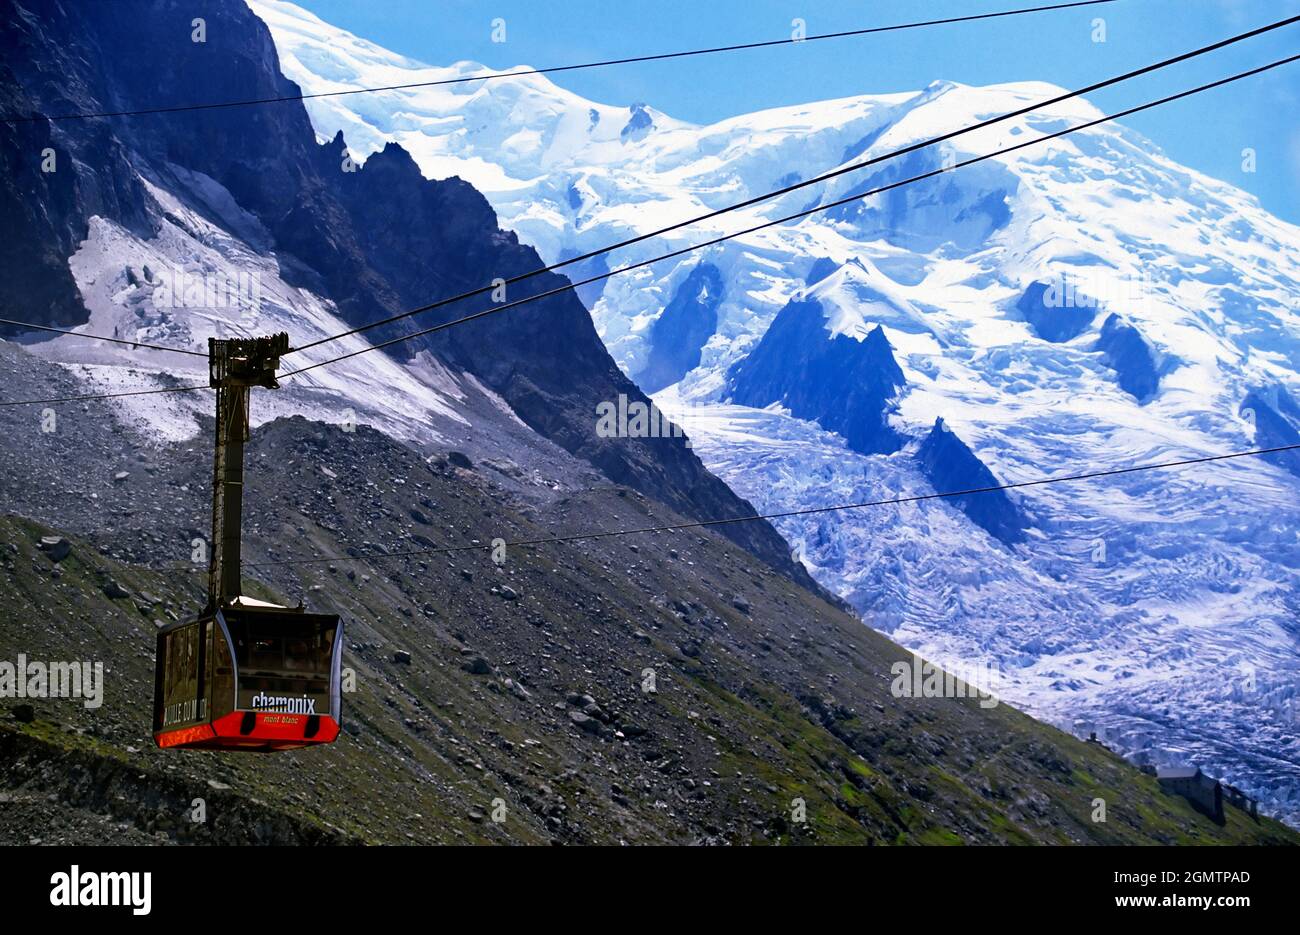 Chamonix, Francia - 20 de junio de 2013; No hay personas a la vista. Con una elevación de 4808m sobre el nivel del mar, Mont Blanc es la montaña más alta de los Alpes y el oeste Foto de stock